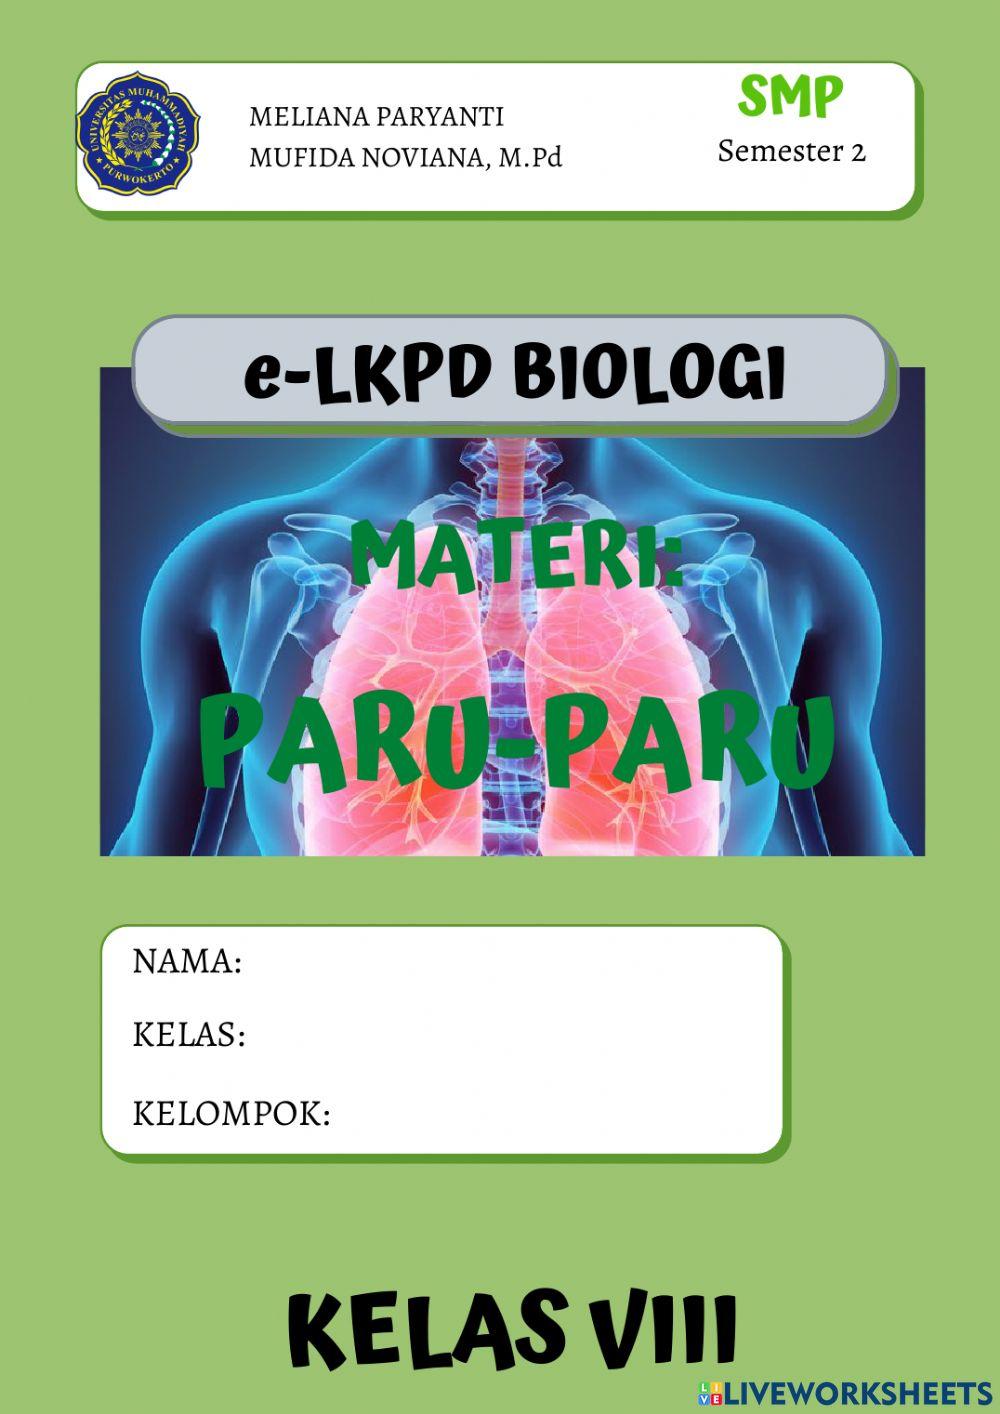 E-LKPD 2 PARU-PARU